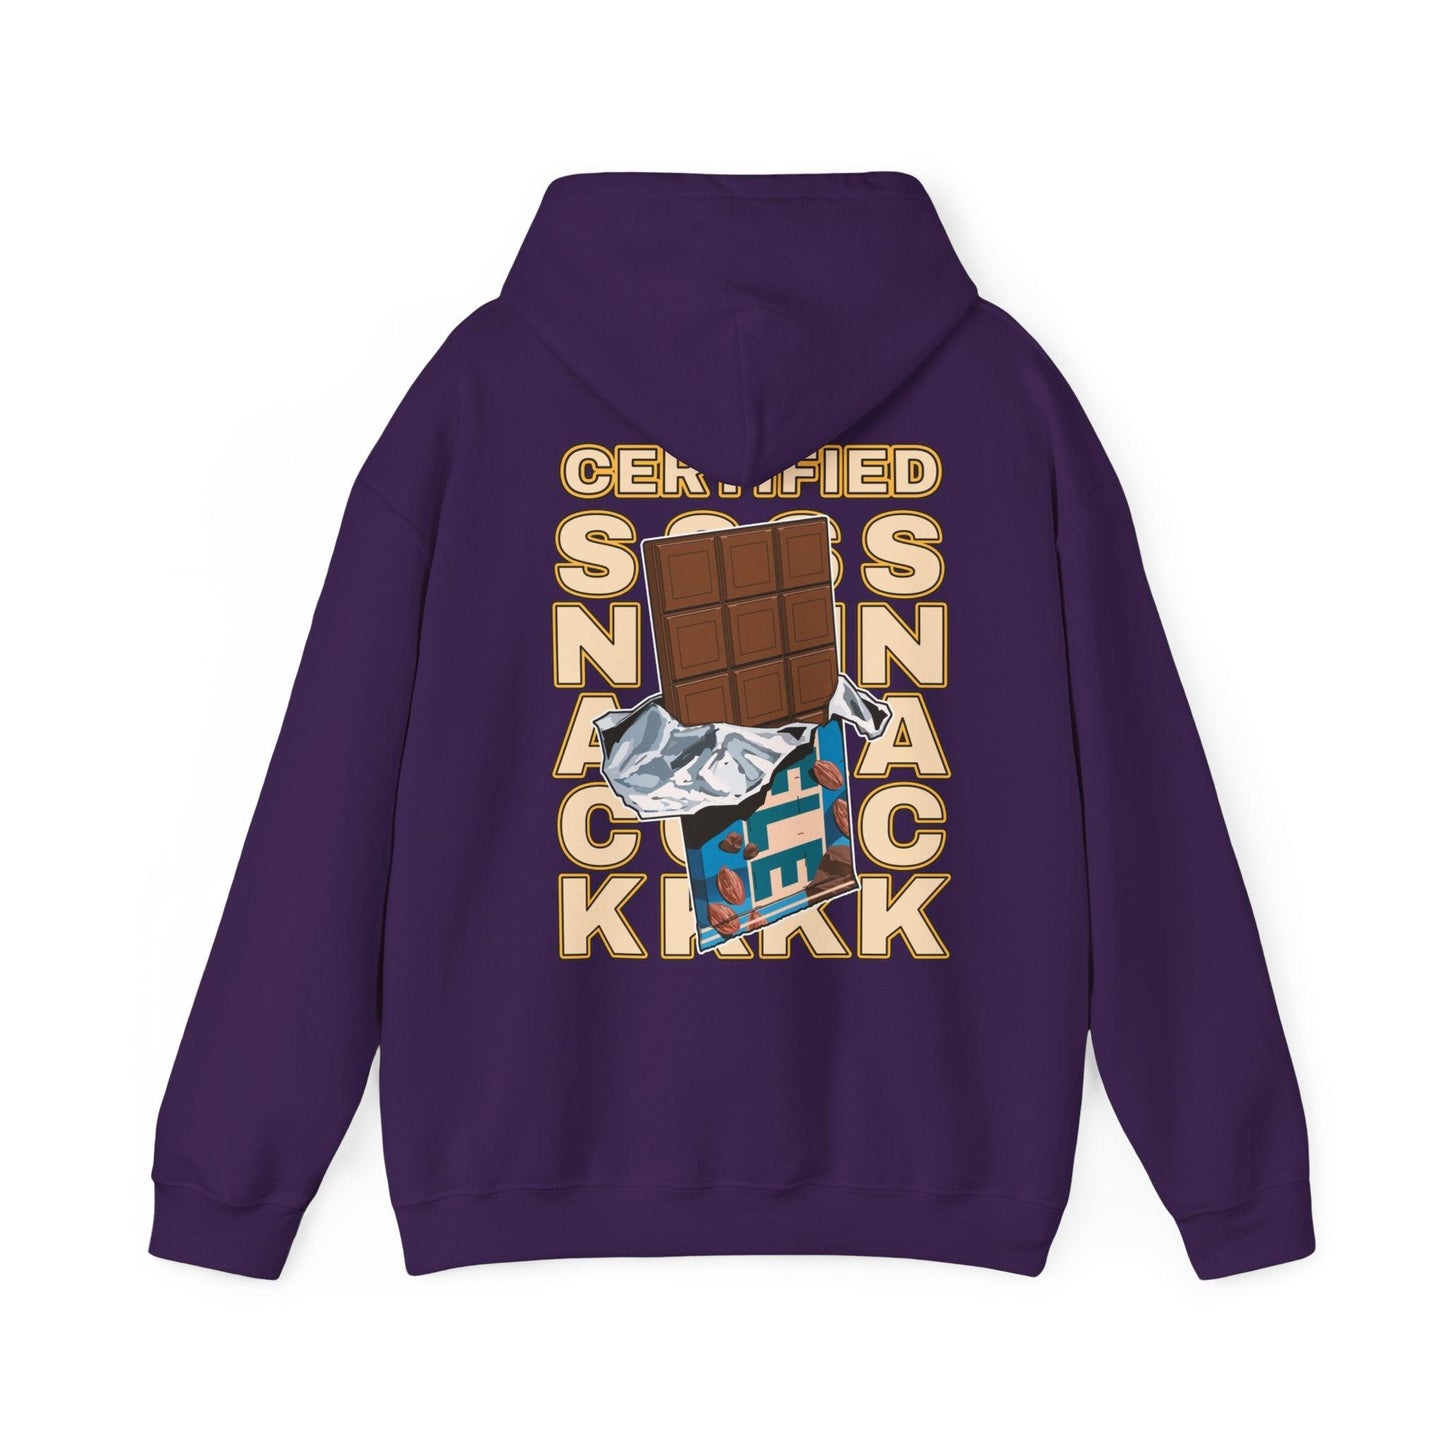 Snack - Unisex Heavy Blend Hooded Sweatshirt - Shaneinvasion